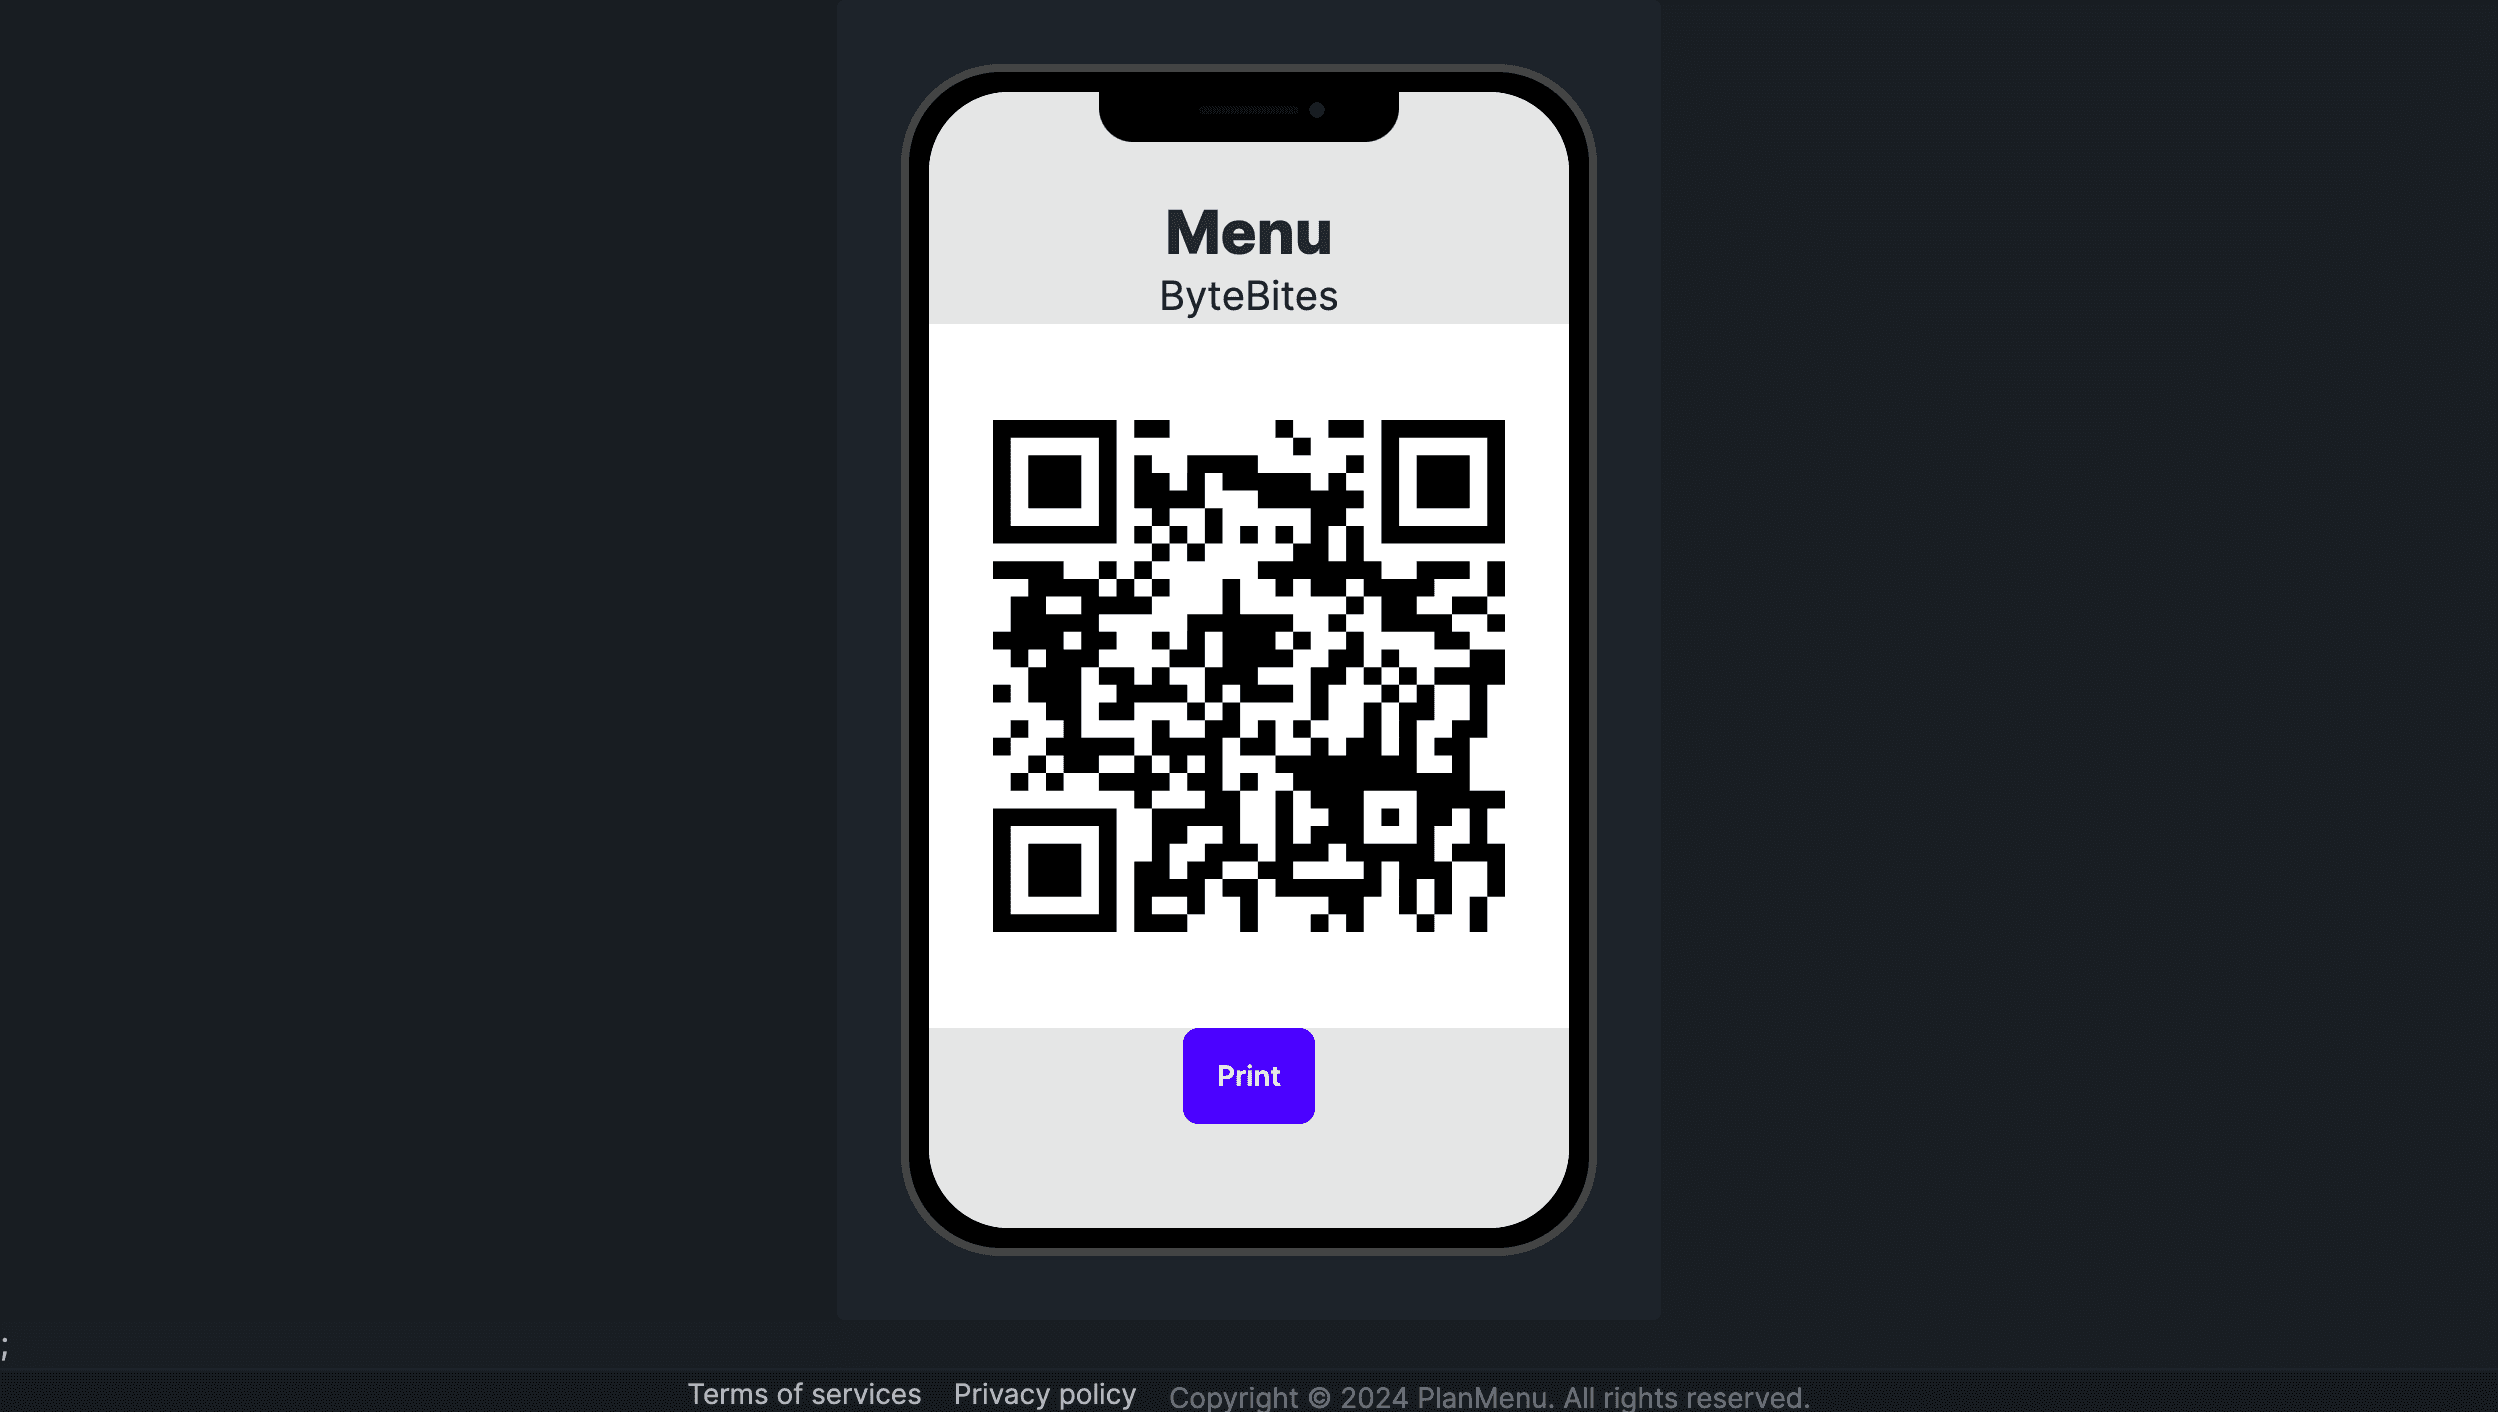 Share menu via QR code